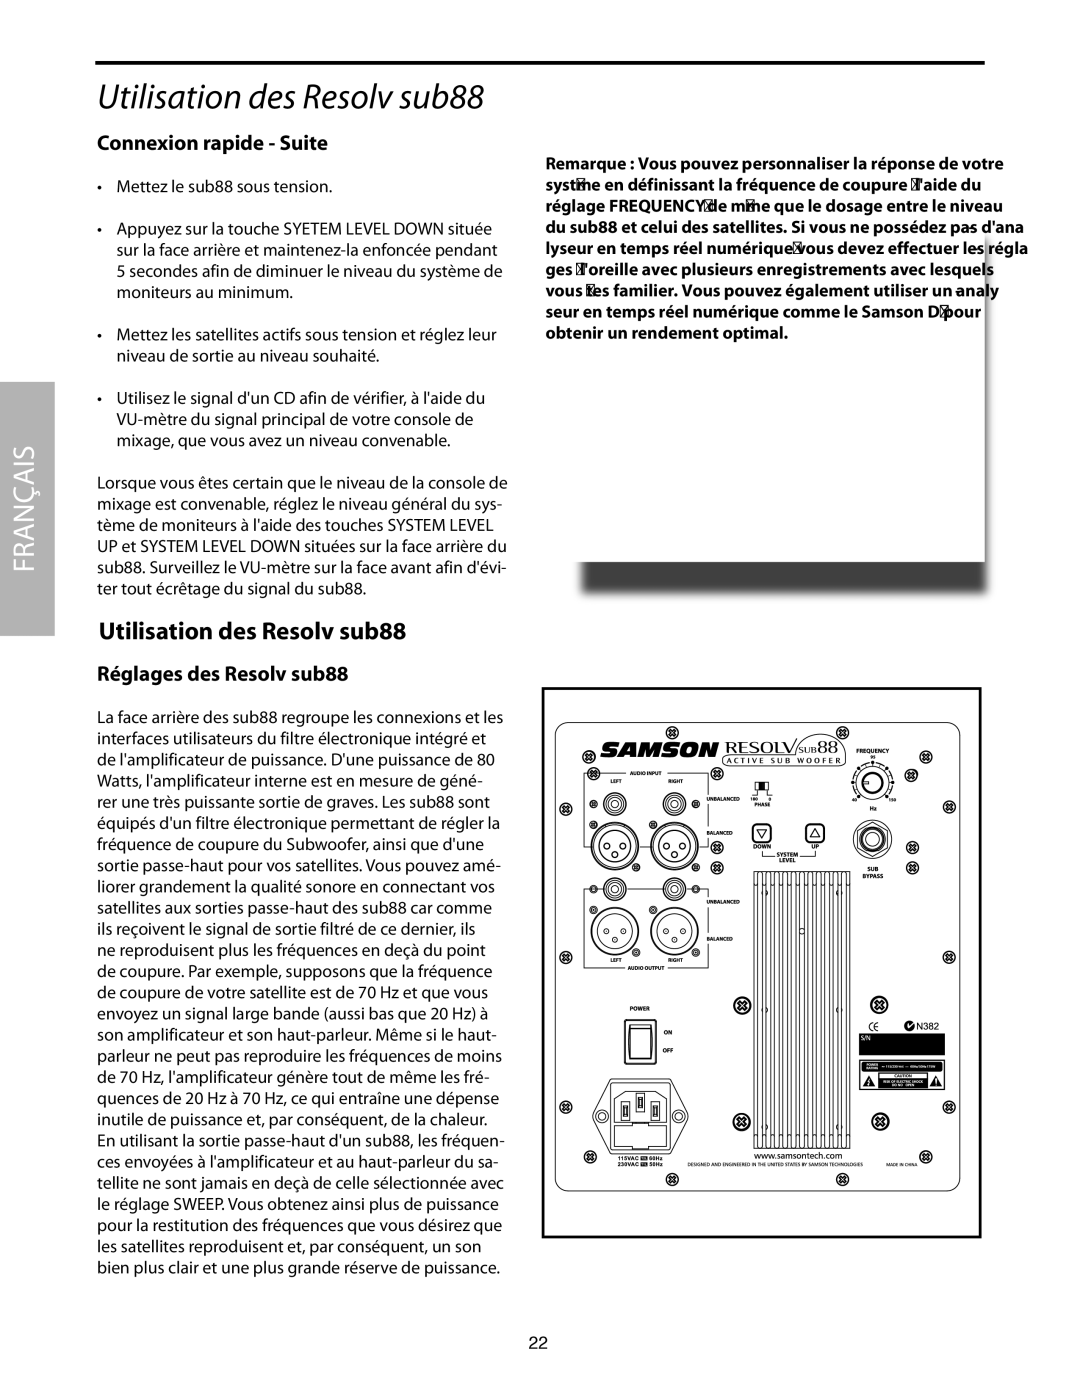 Samson SUB88 manual Utilisation des Resolv sub88, Connexion rapide Suite, Réglages des Resolv sub88 